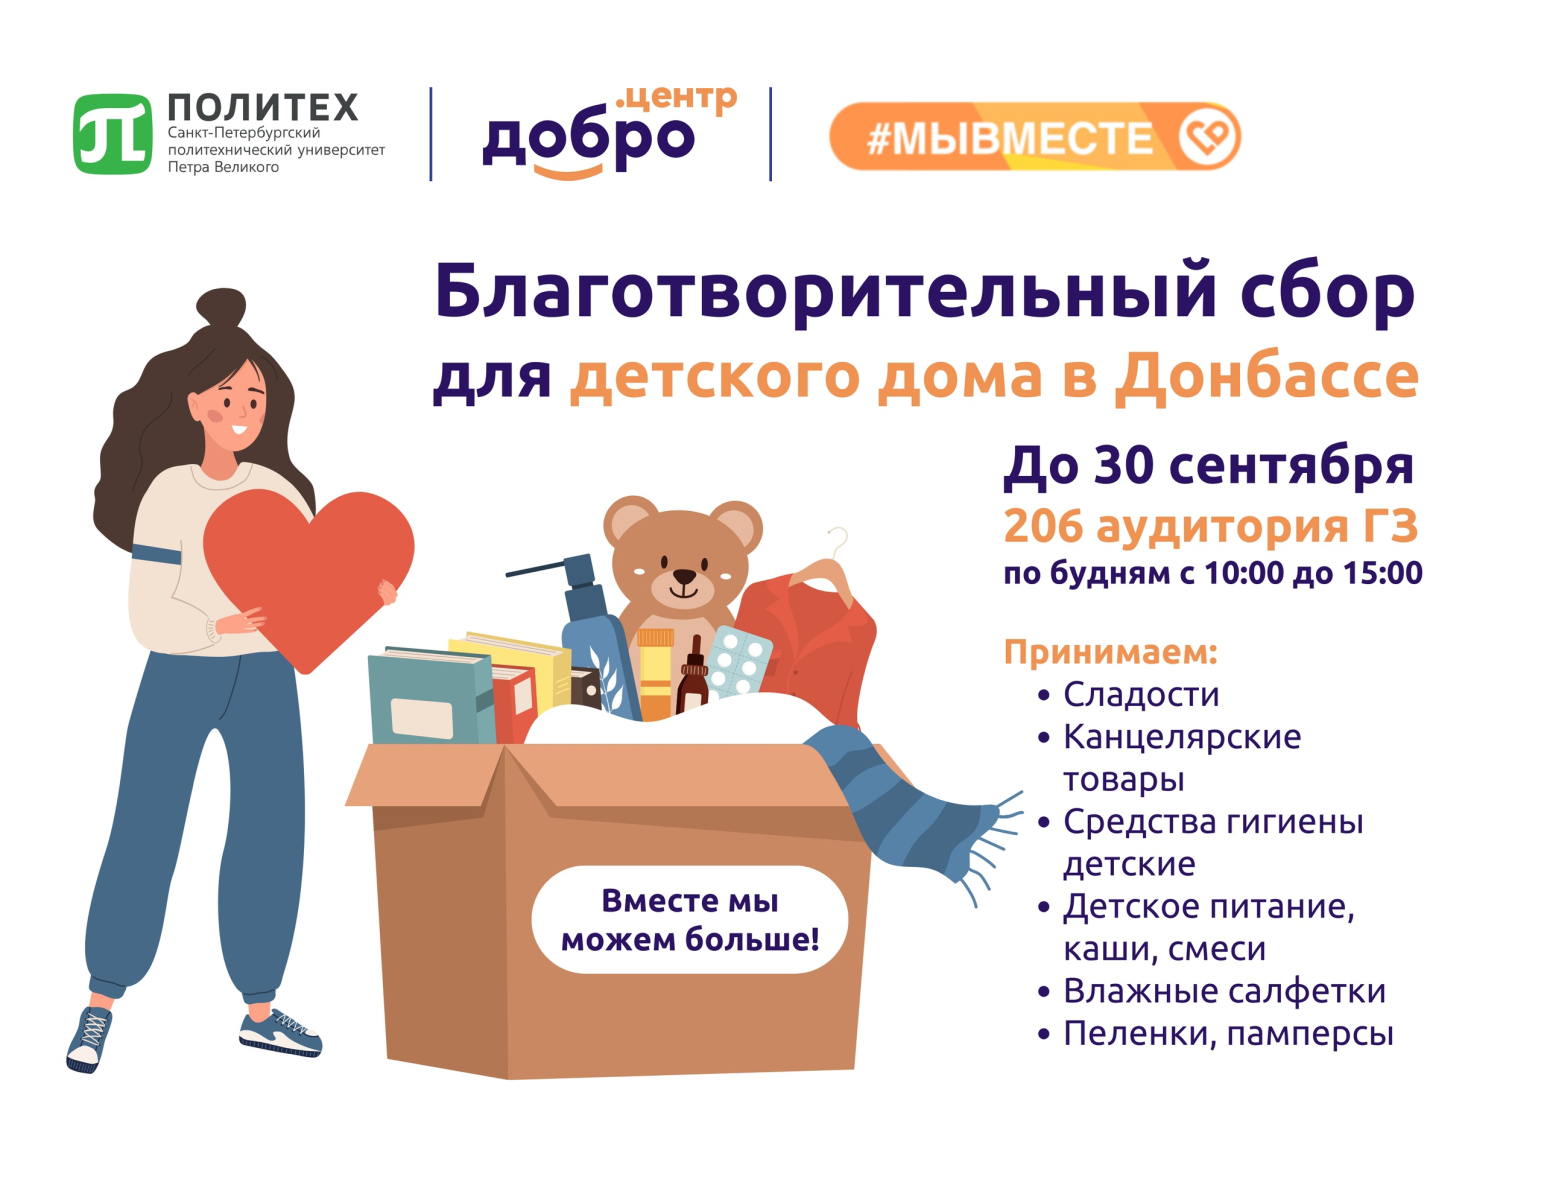 Благотворительный сбор для детского дома в Донбассе снова открыт